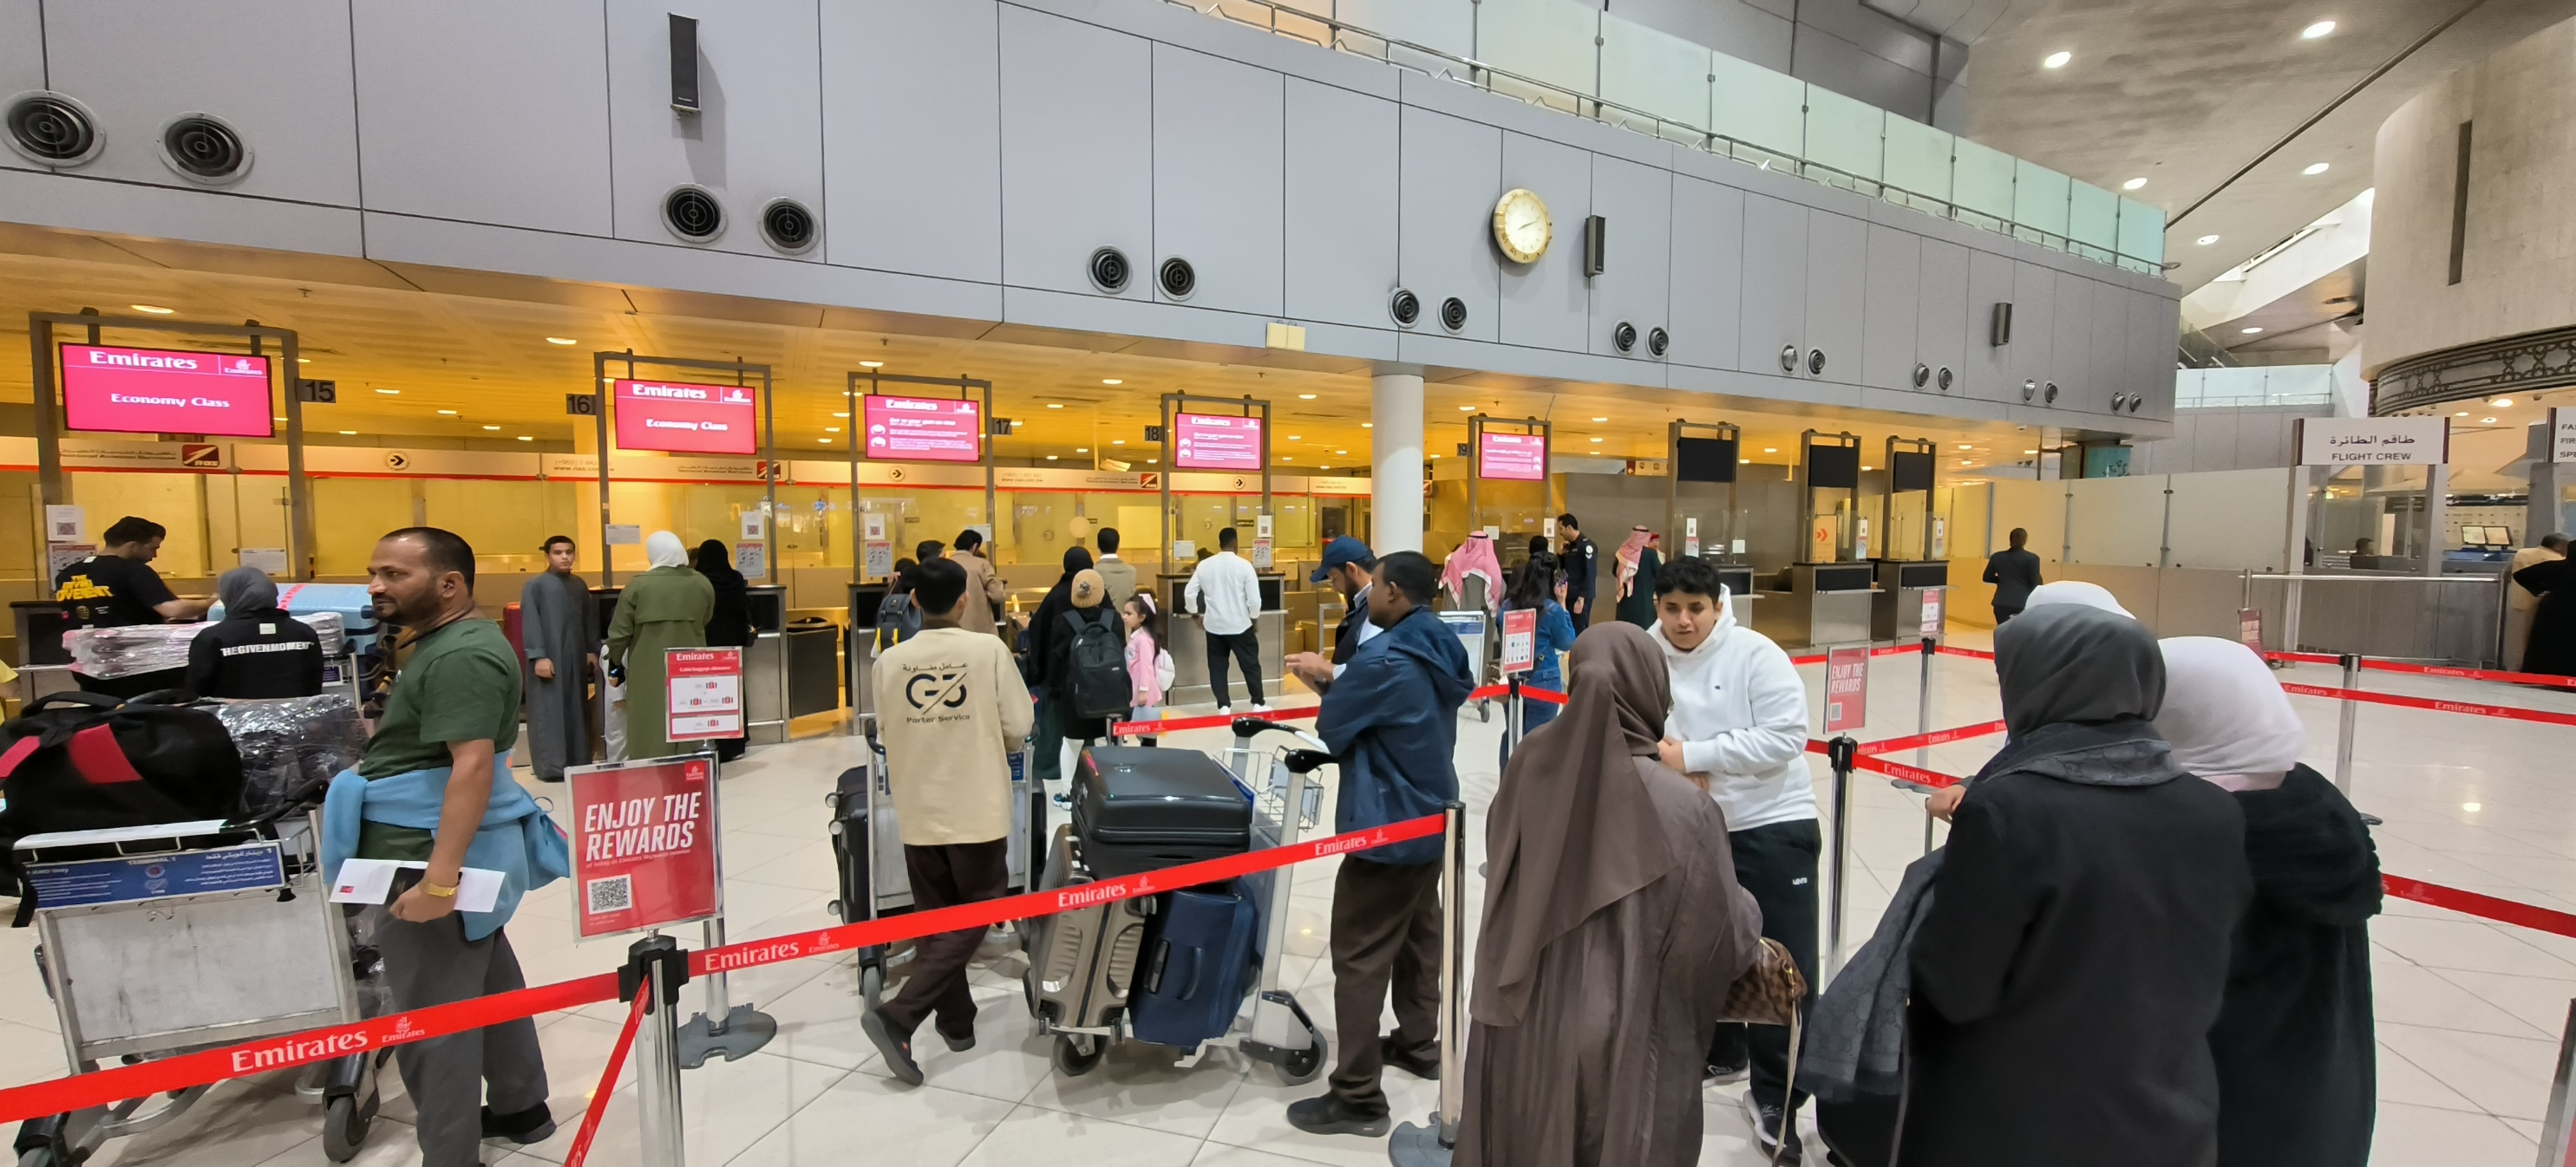 科威特国际机场，中东海湾国家的机场，规模不大，不是一个中转机场，基本不用排队，人不多，大部分是印度旅